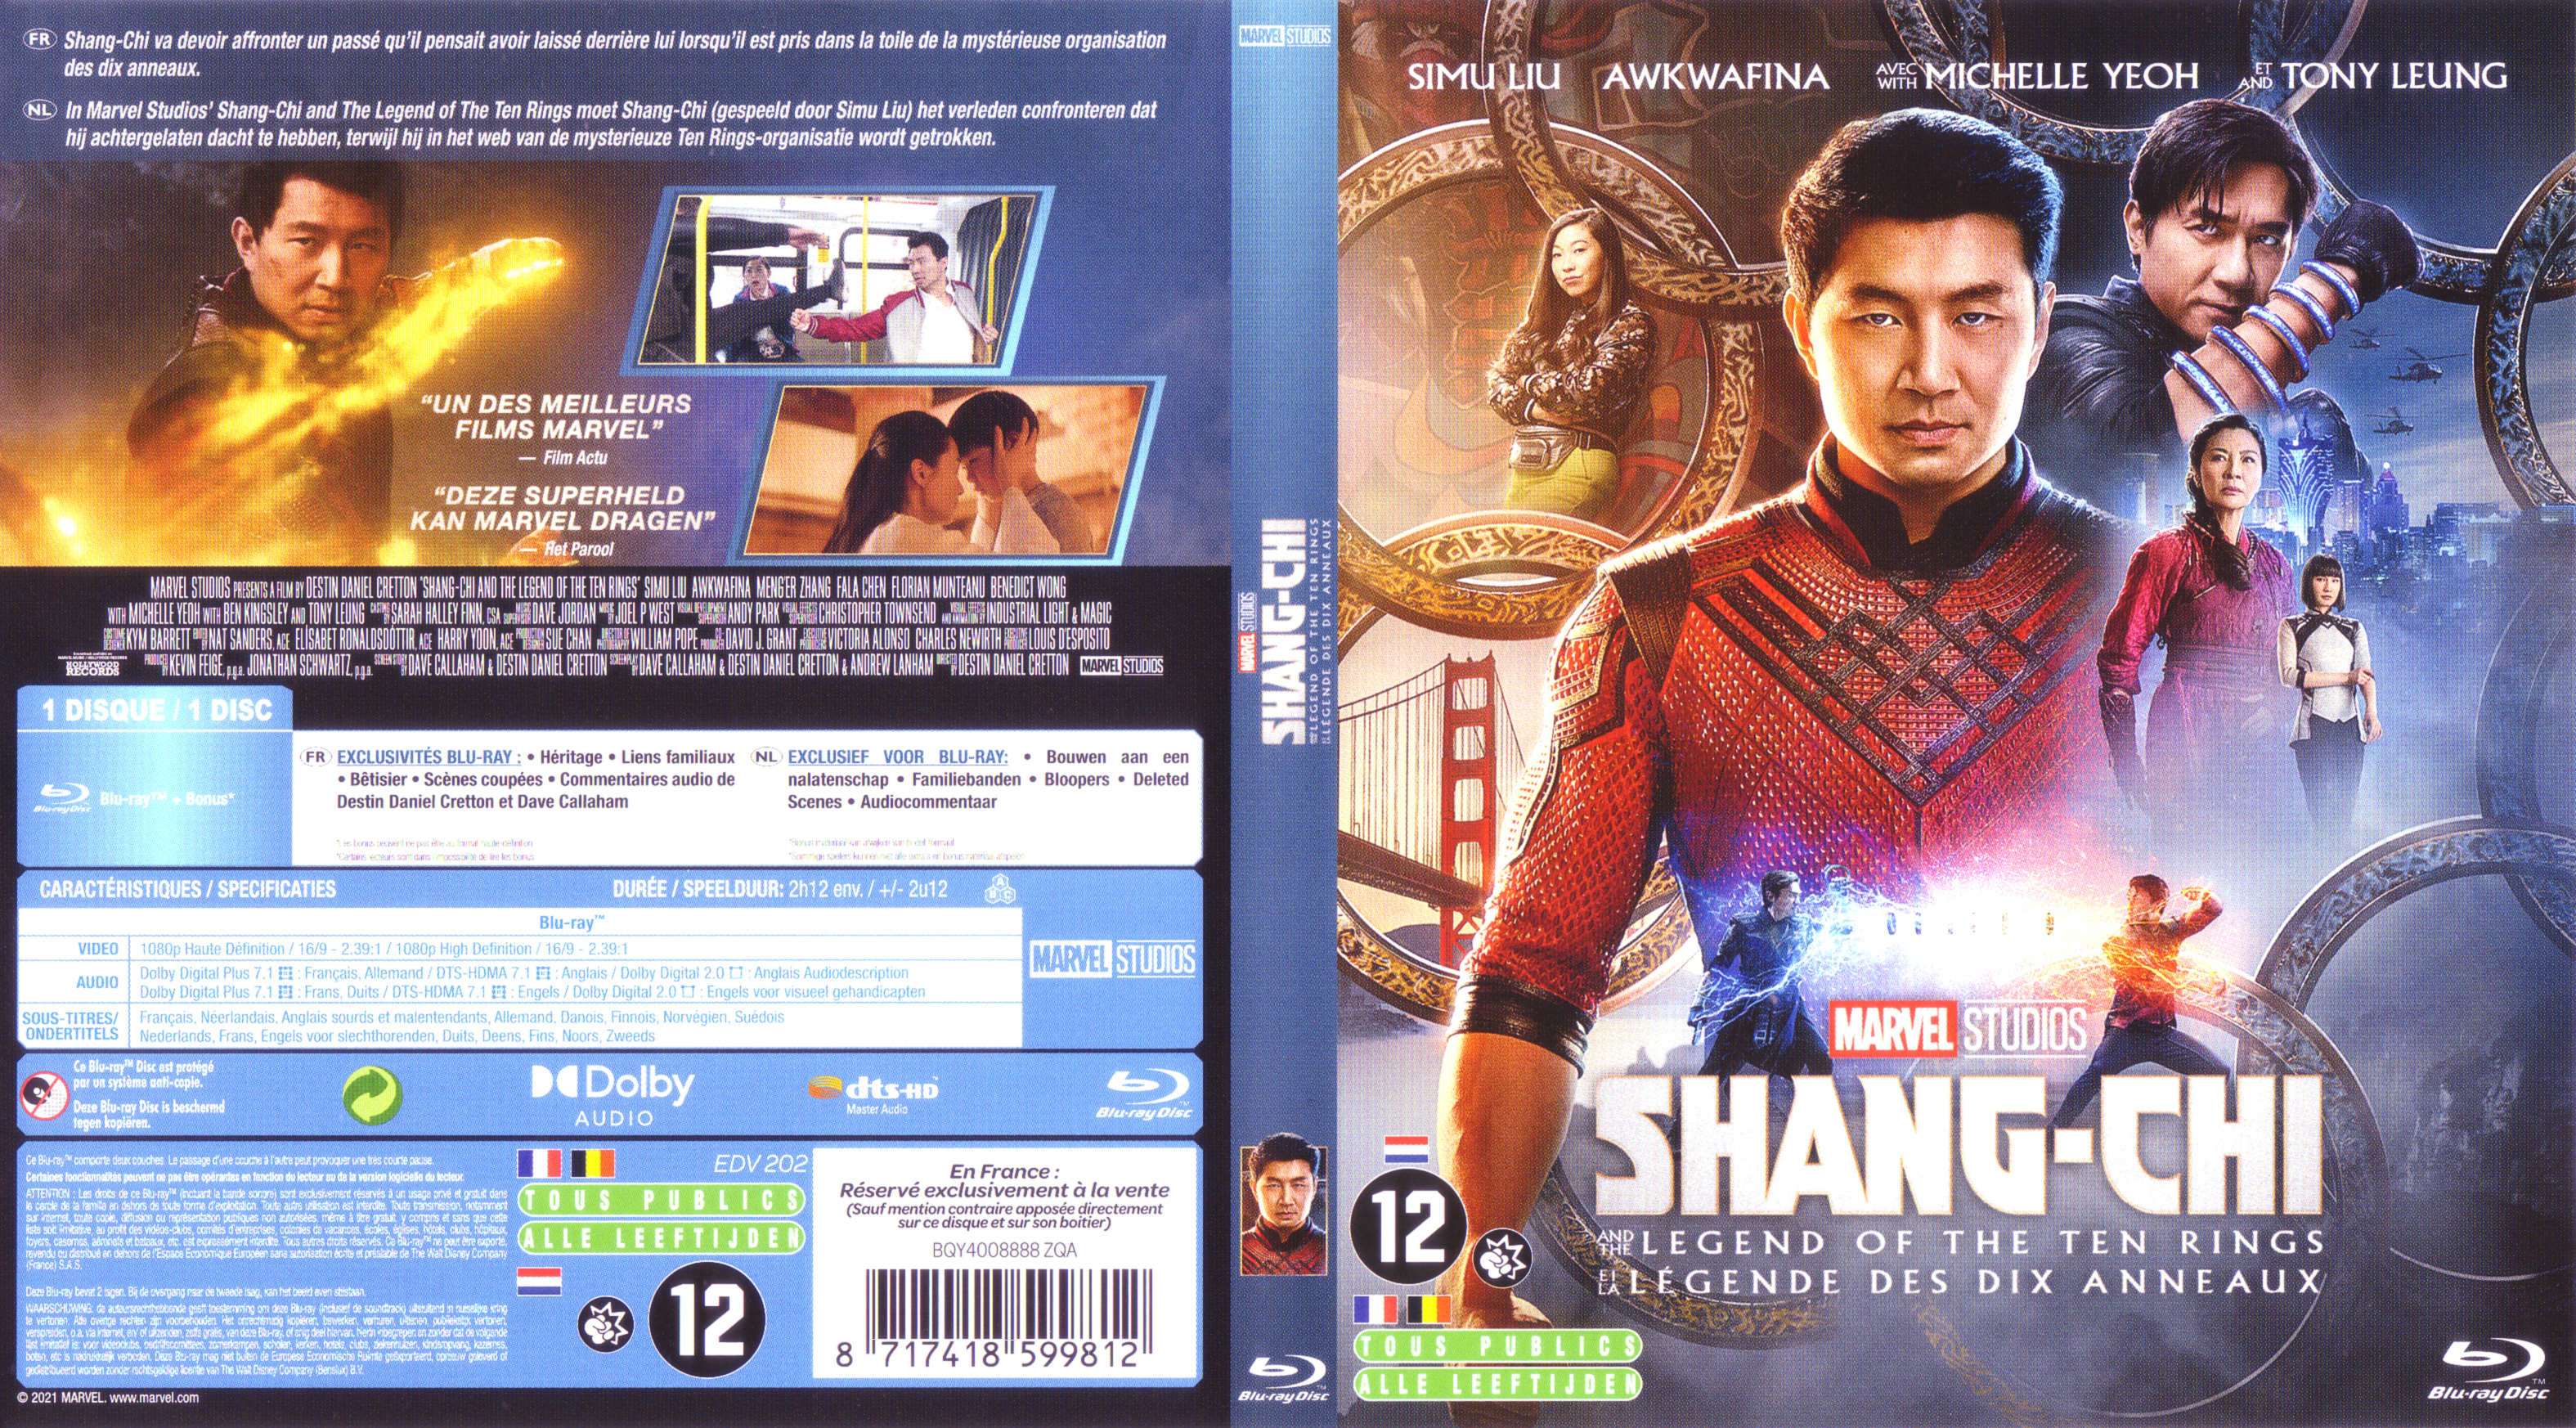 Jaquette DVD Shang-Chi et la legende des dix anneaux (BLU-RAY)